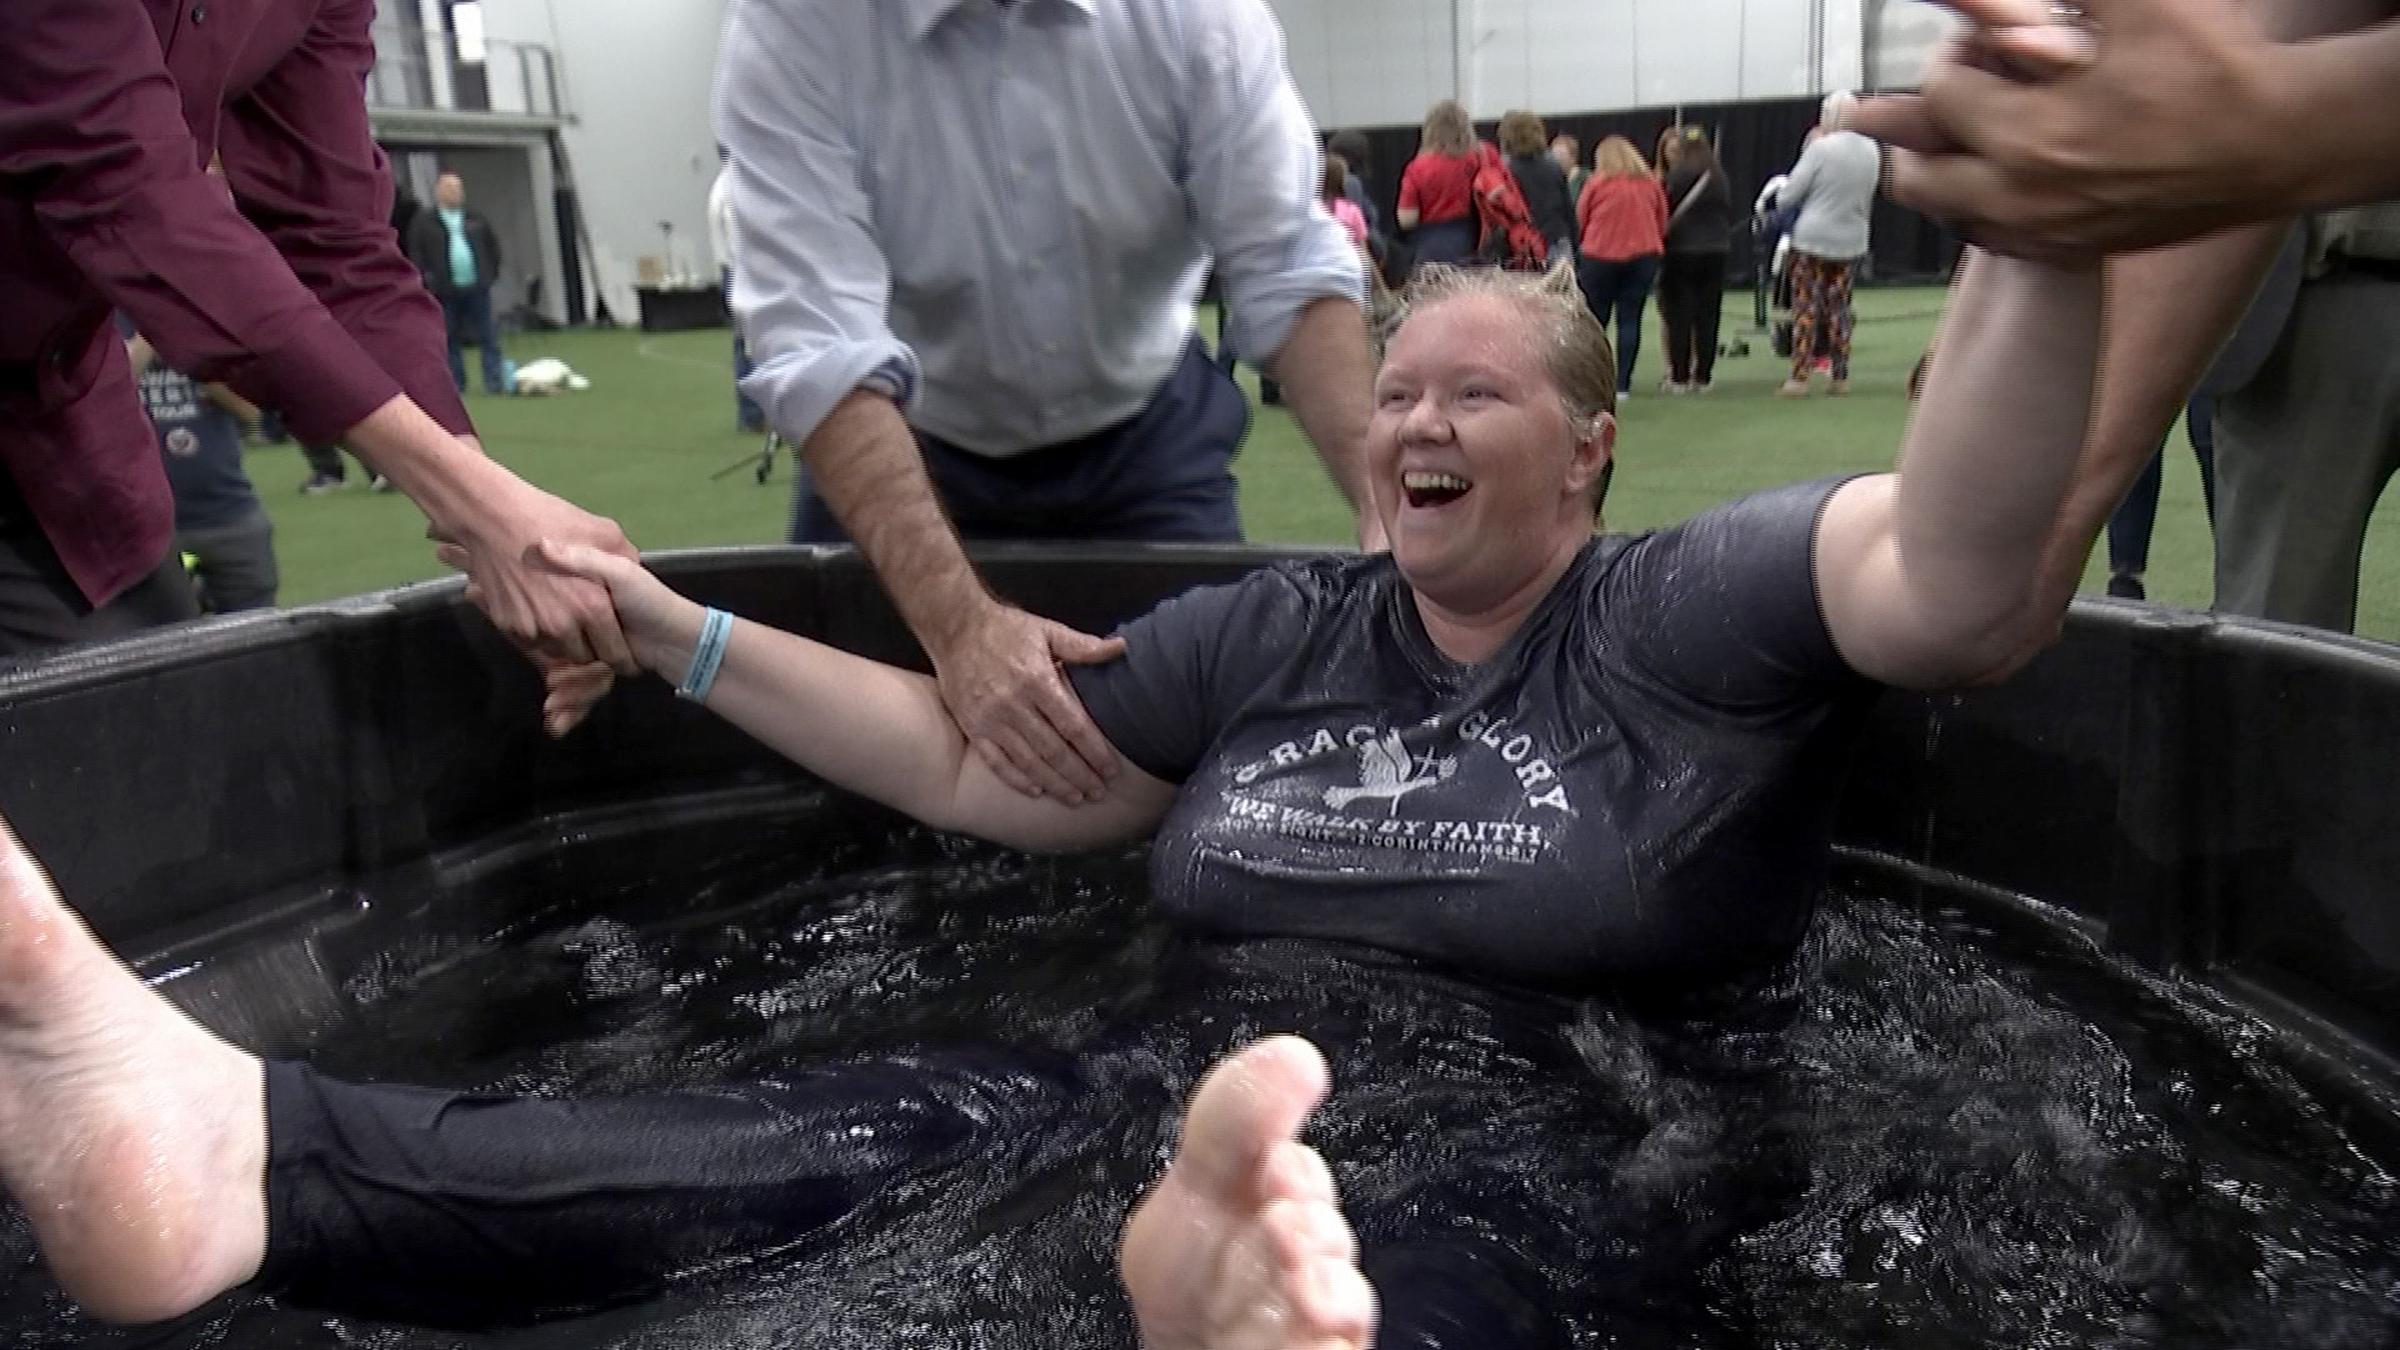 woman baptized